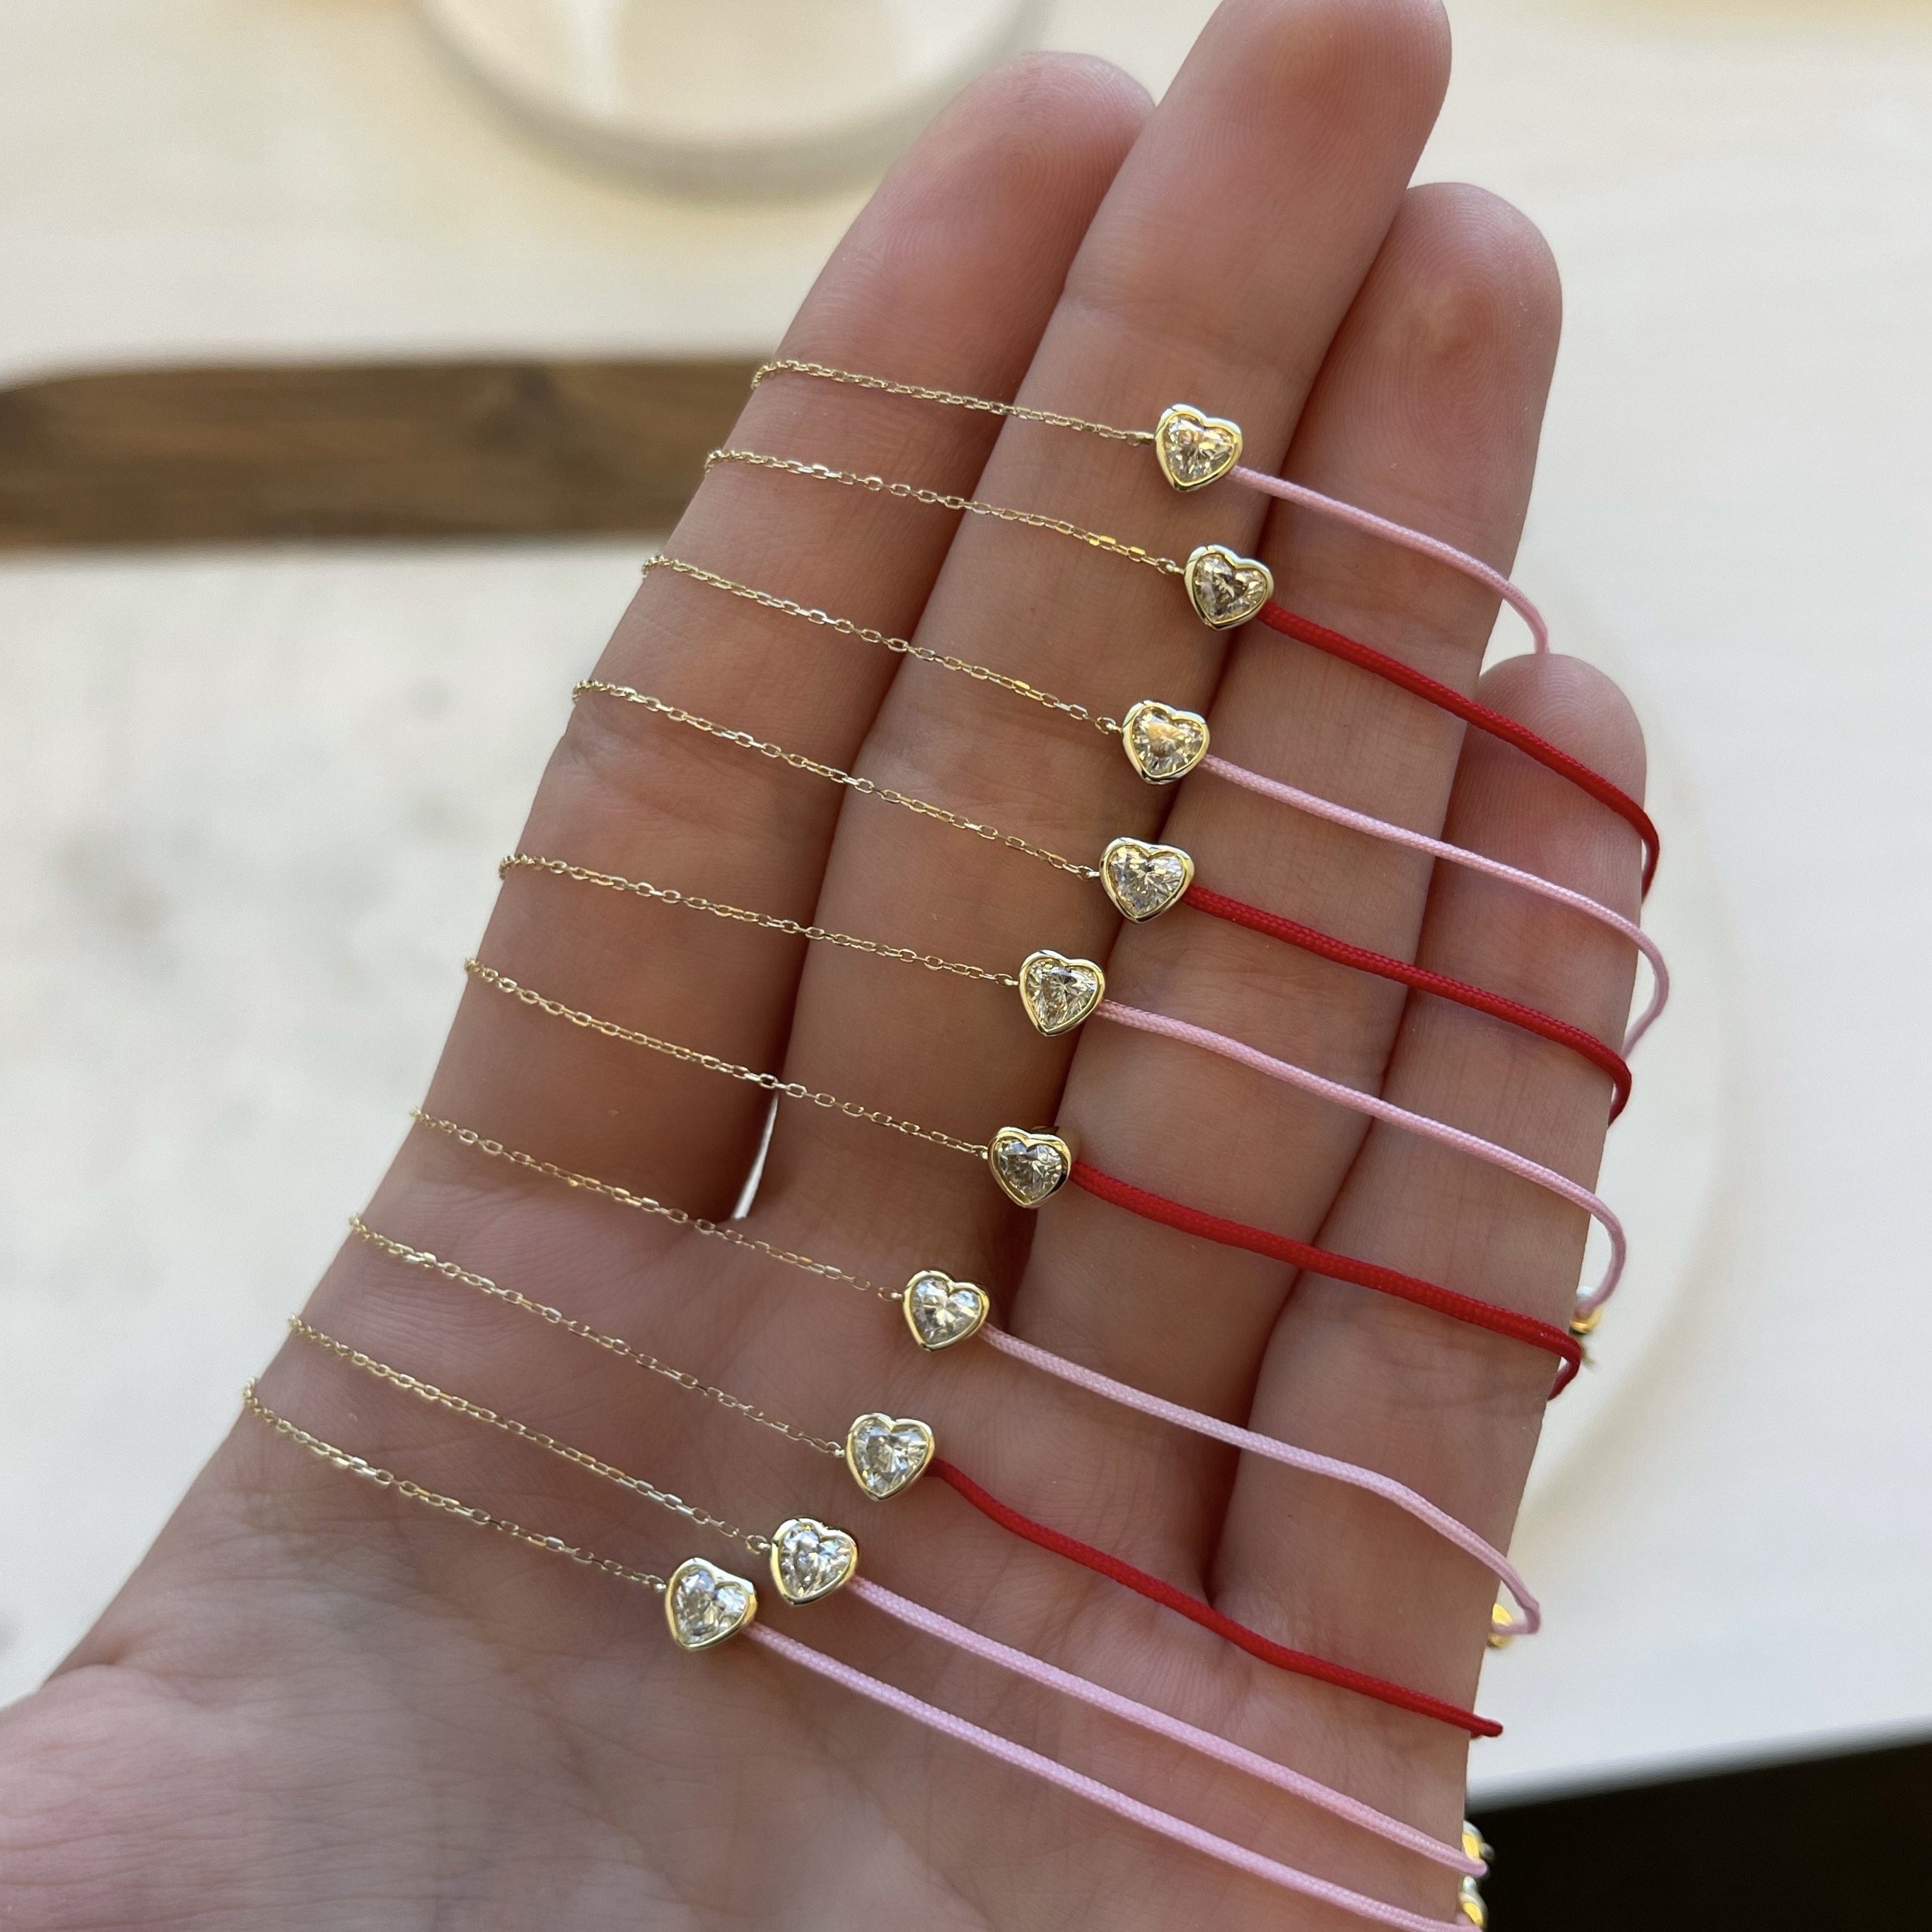 LIMITED EDITION 18k Fancy Heart Diamond Chain/Silk Cord Bracelet